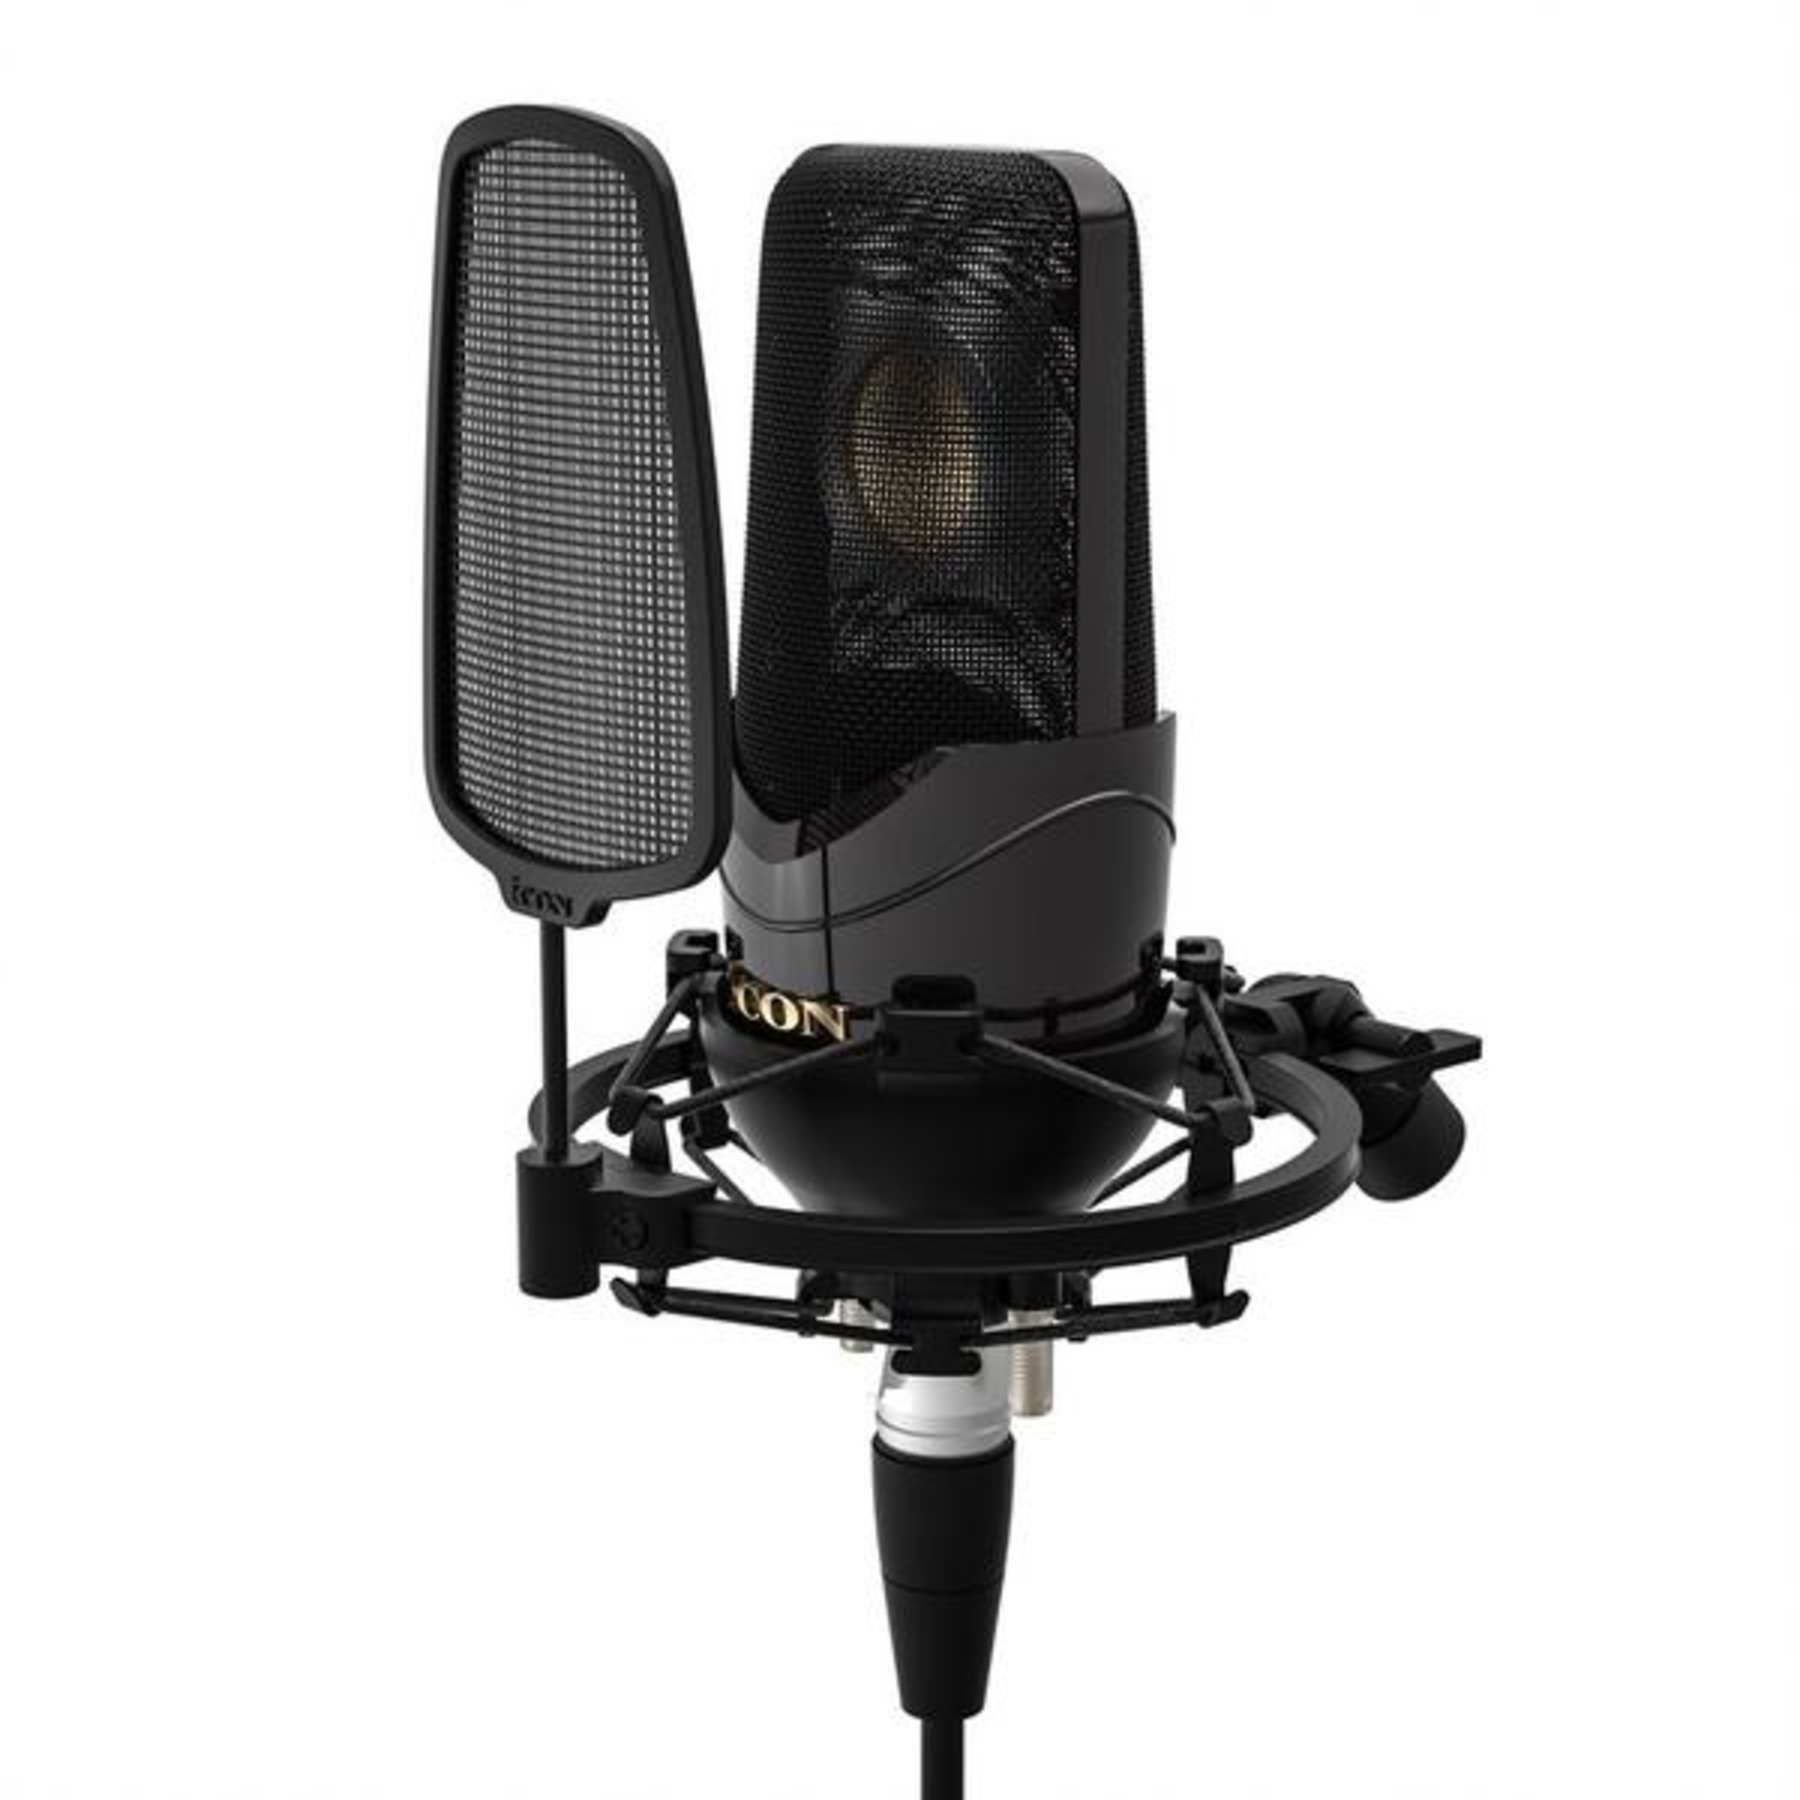 студийные микрофоны icon c1 pro Студийные микрофоны iCON Nova